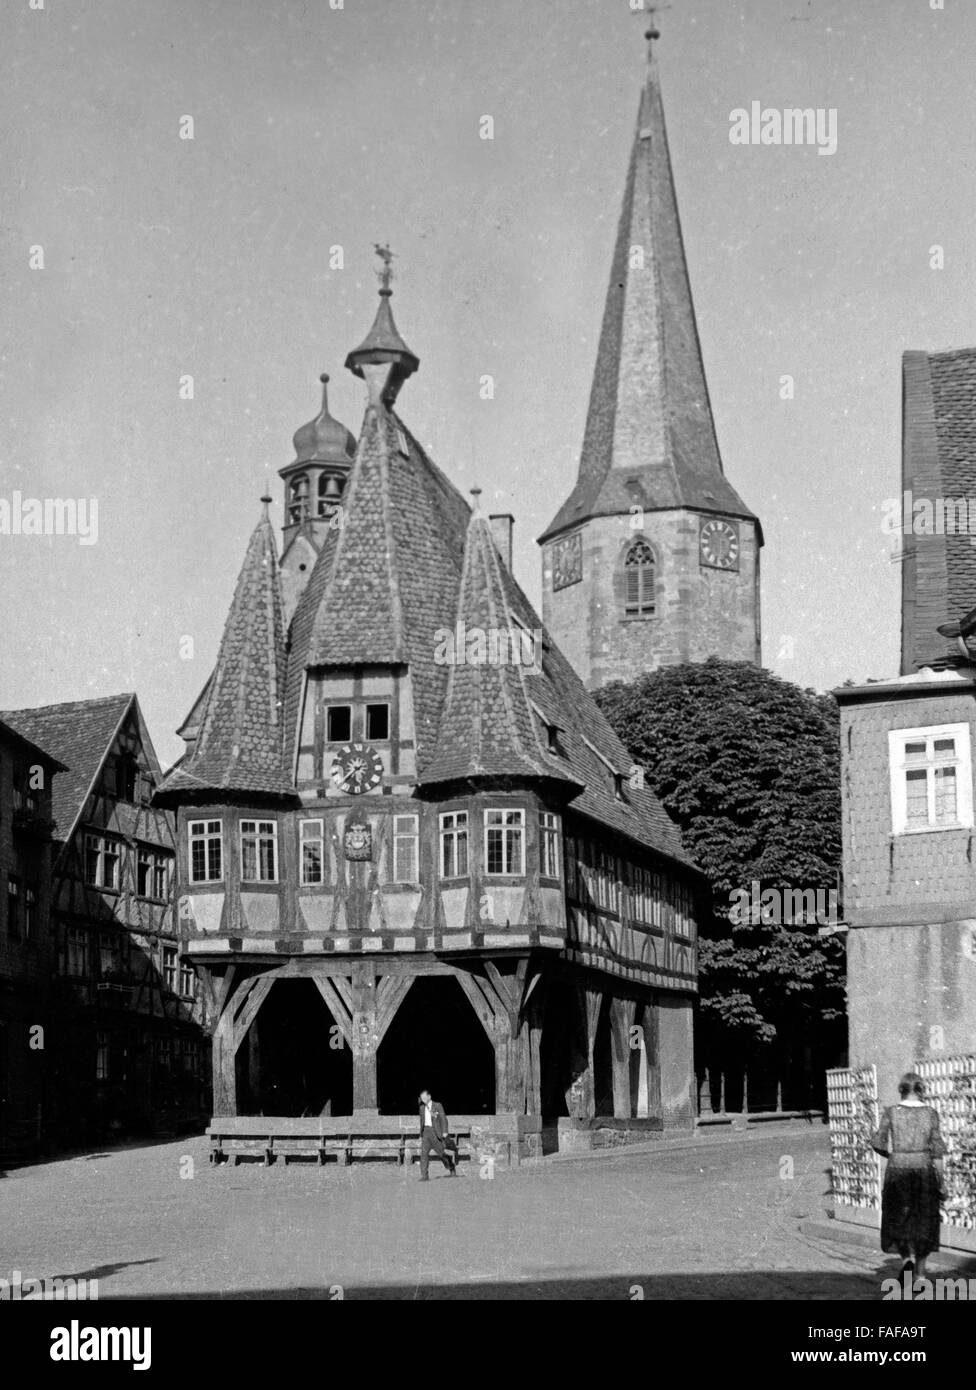 Rathaus und Kirche in Michelstadt im Odenwald, Deutschland 1930er Jahre. Town hall and church at Michelstadt at the Odenwald region, Germany 1930s. Stock Photo